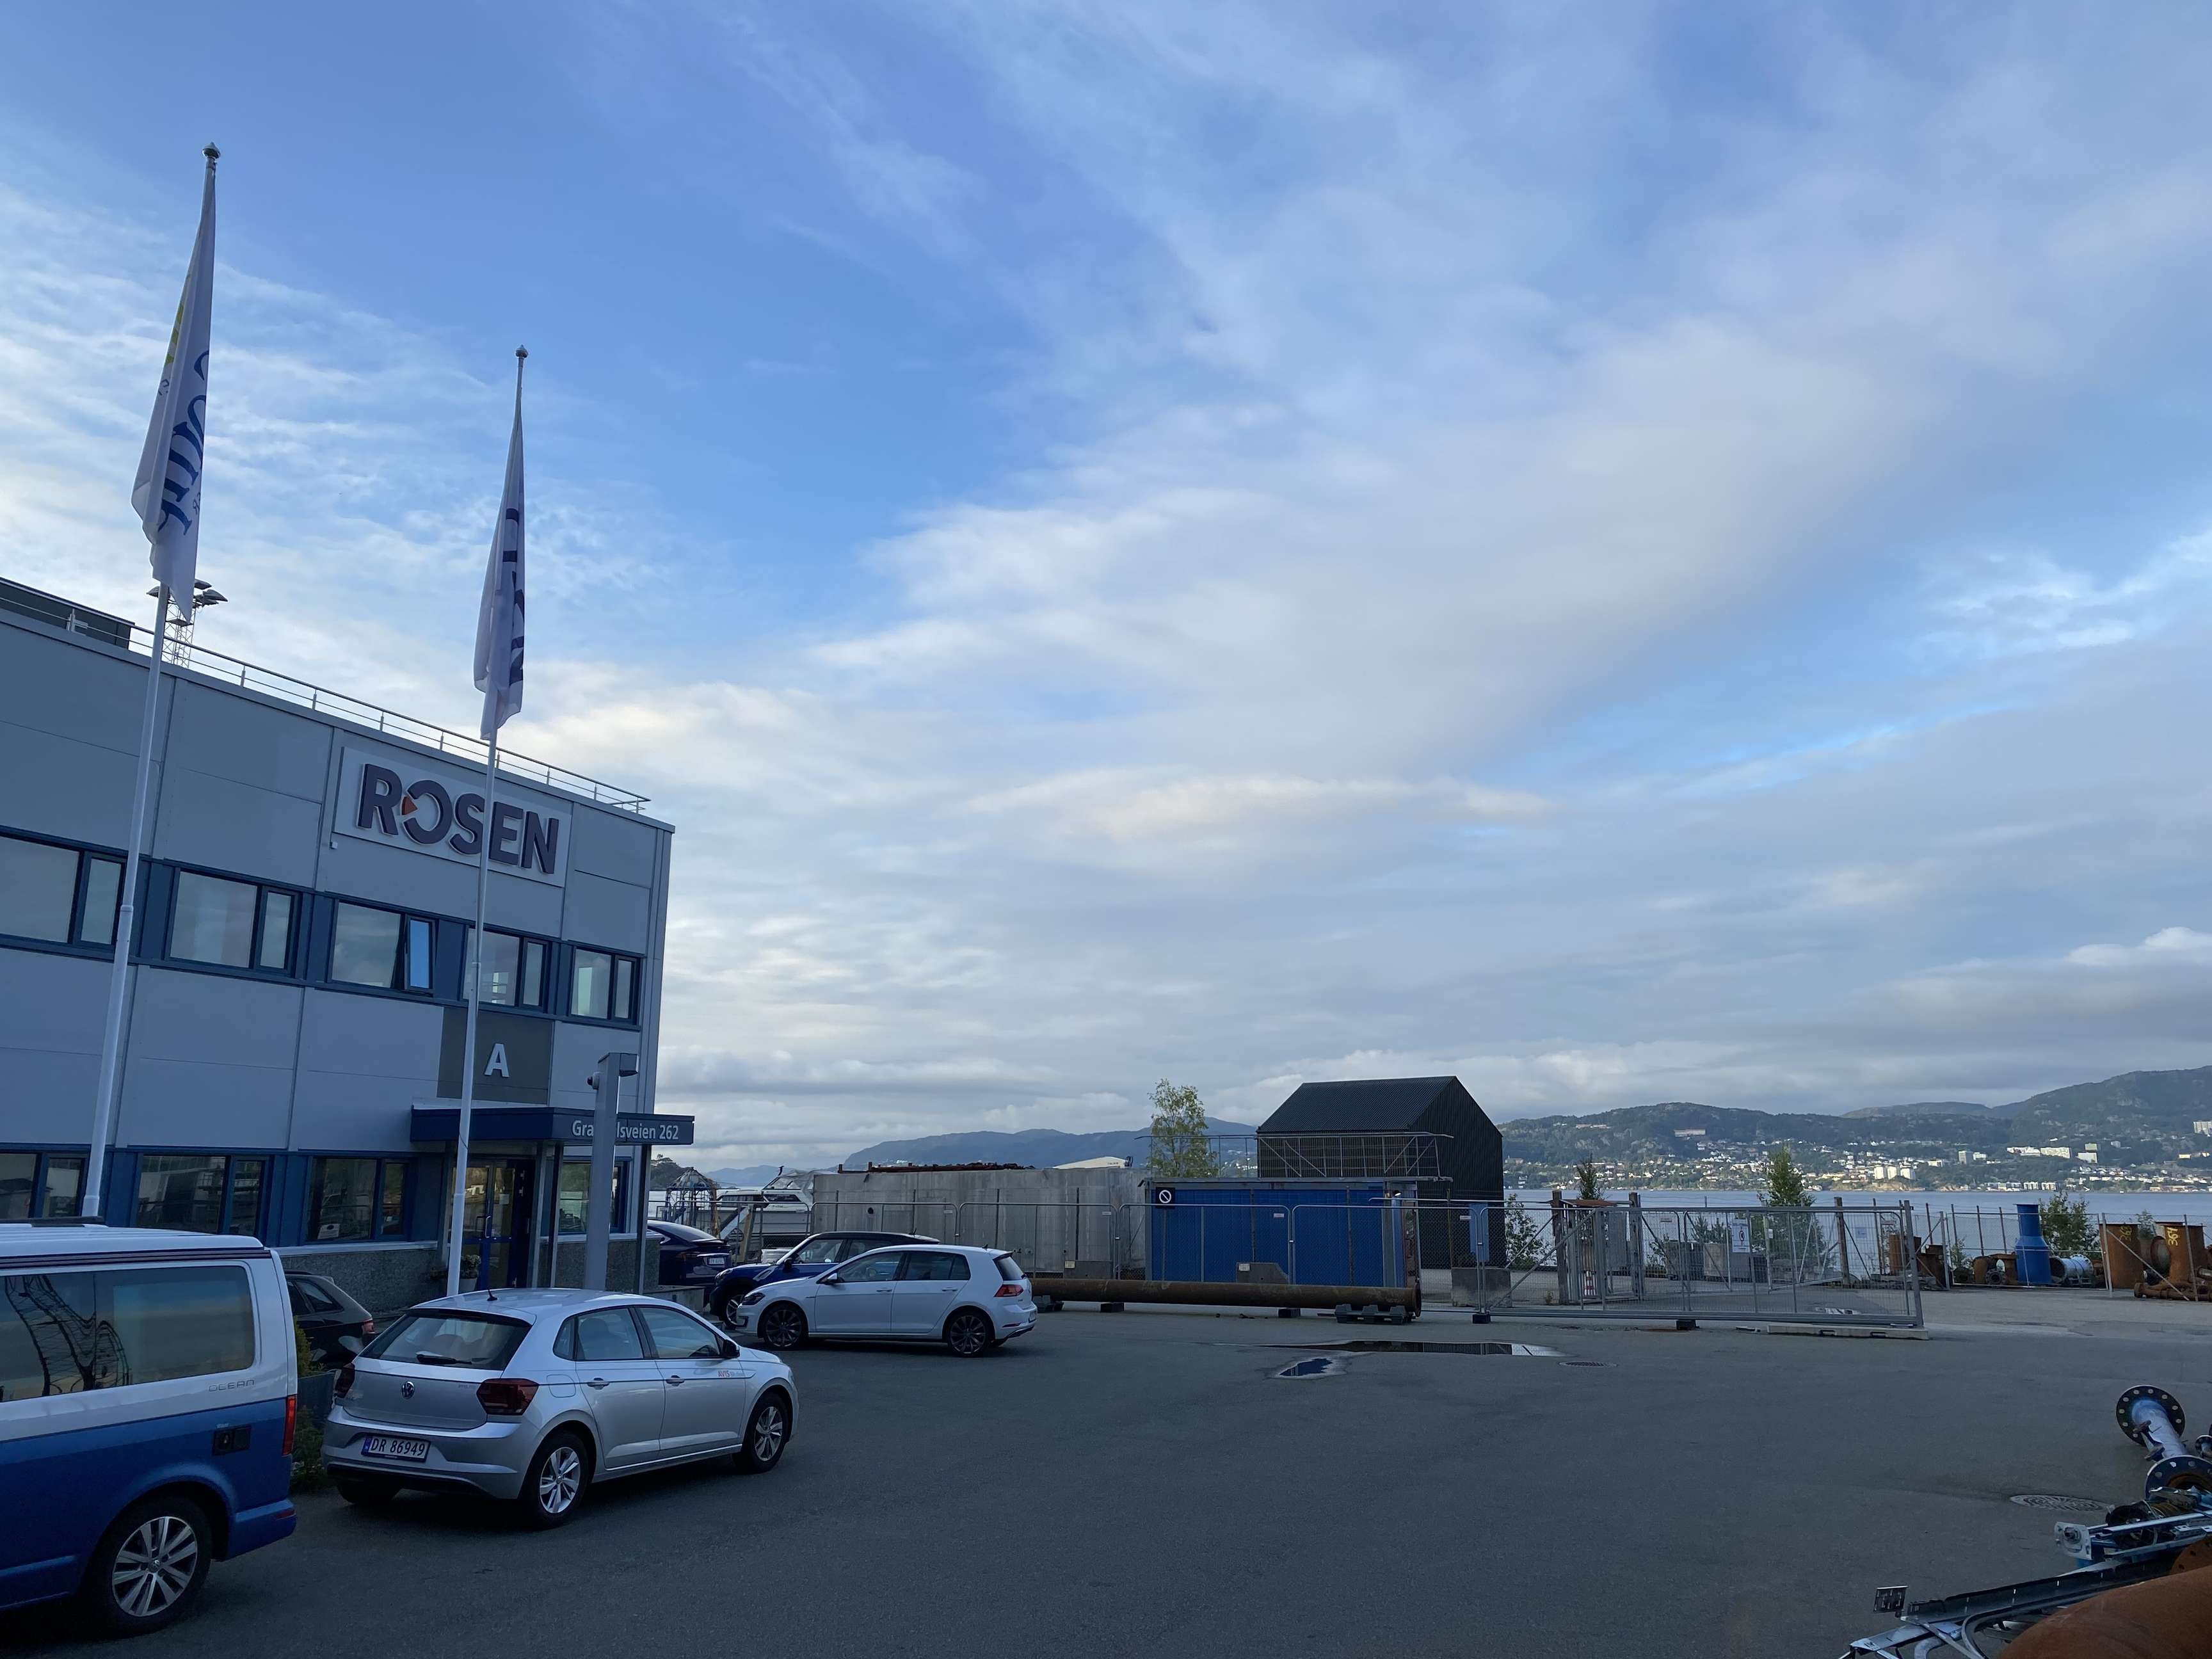 ROSEN location in Bergen, Norway.